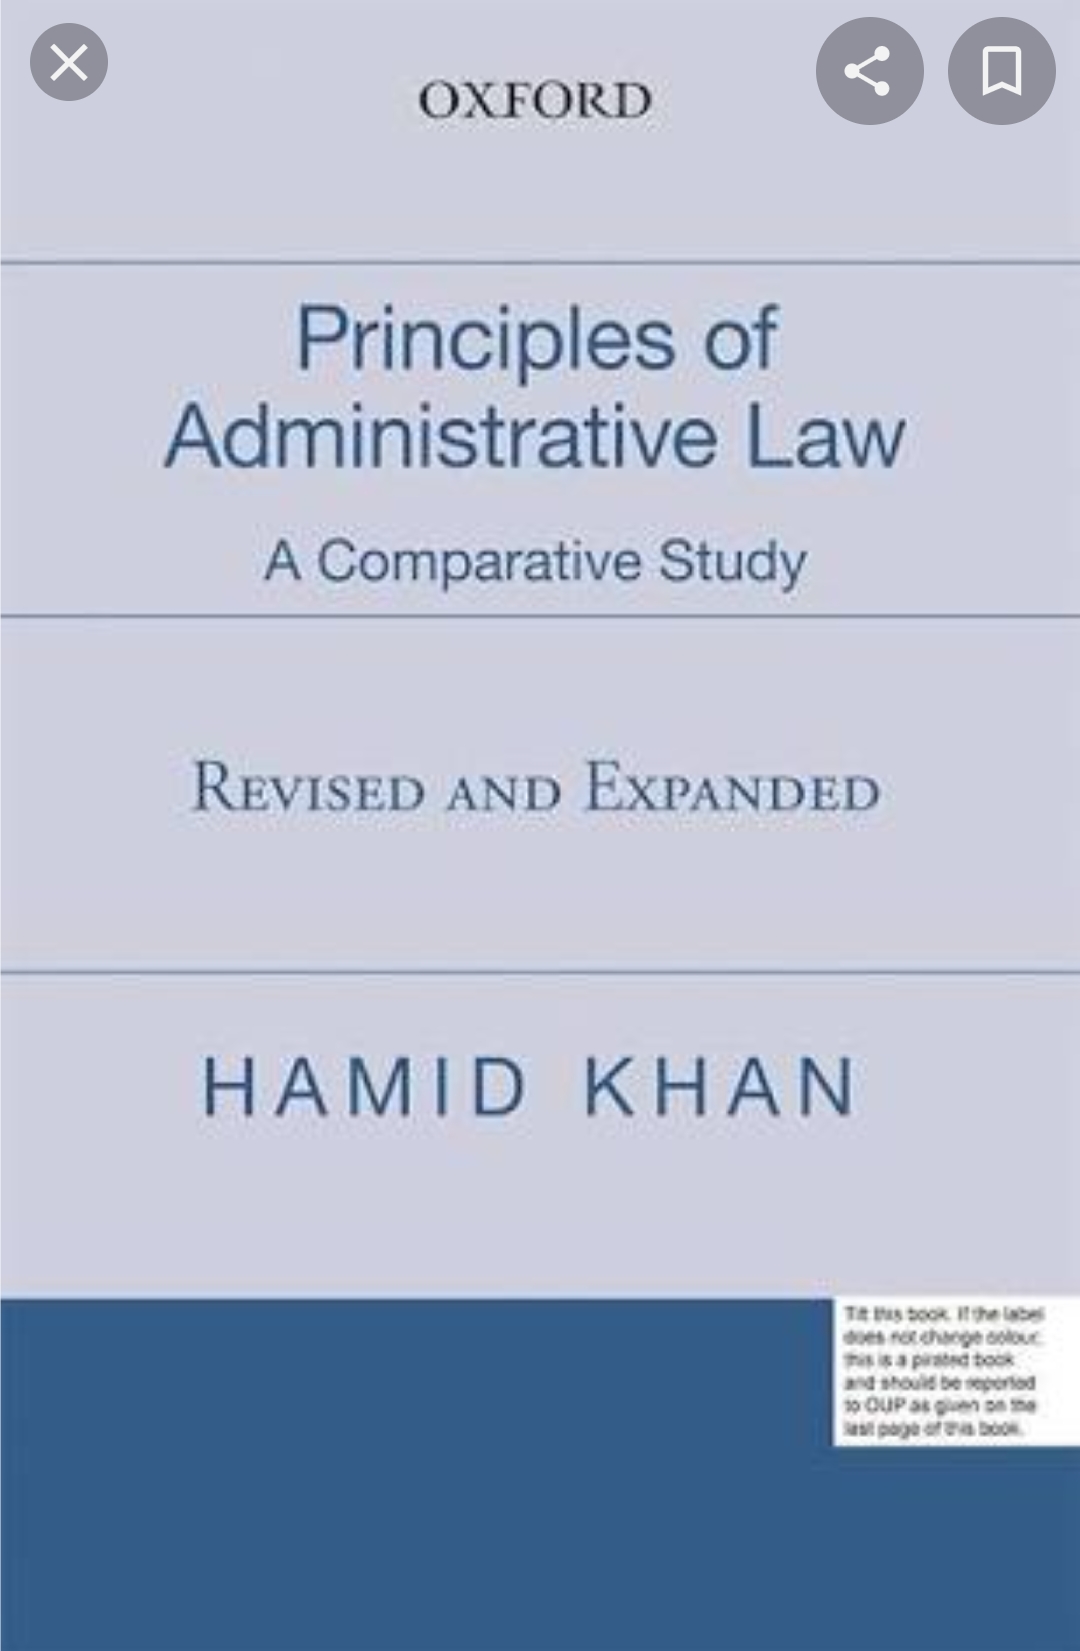 Administrative Law-1(9th semester)